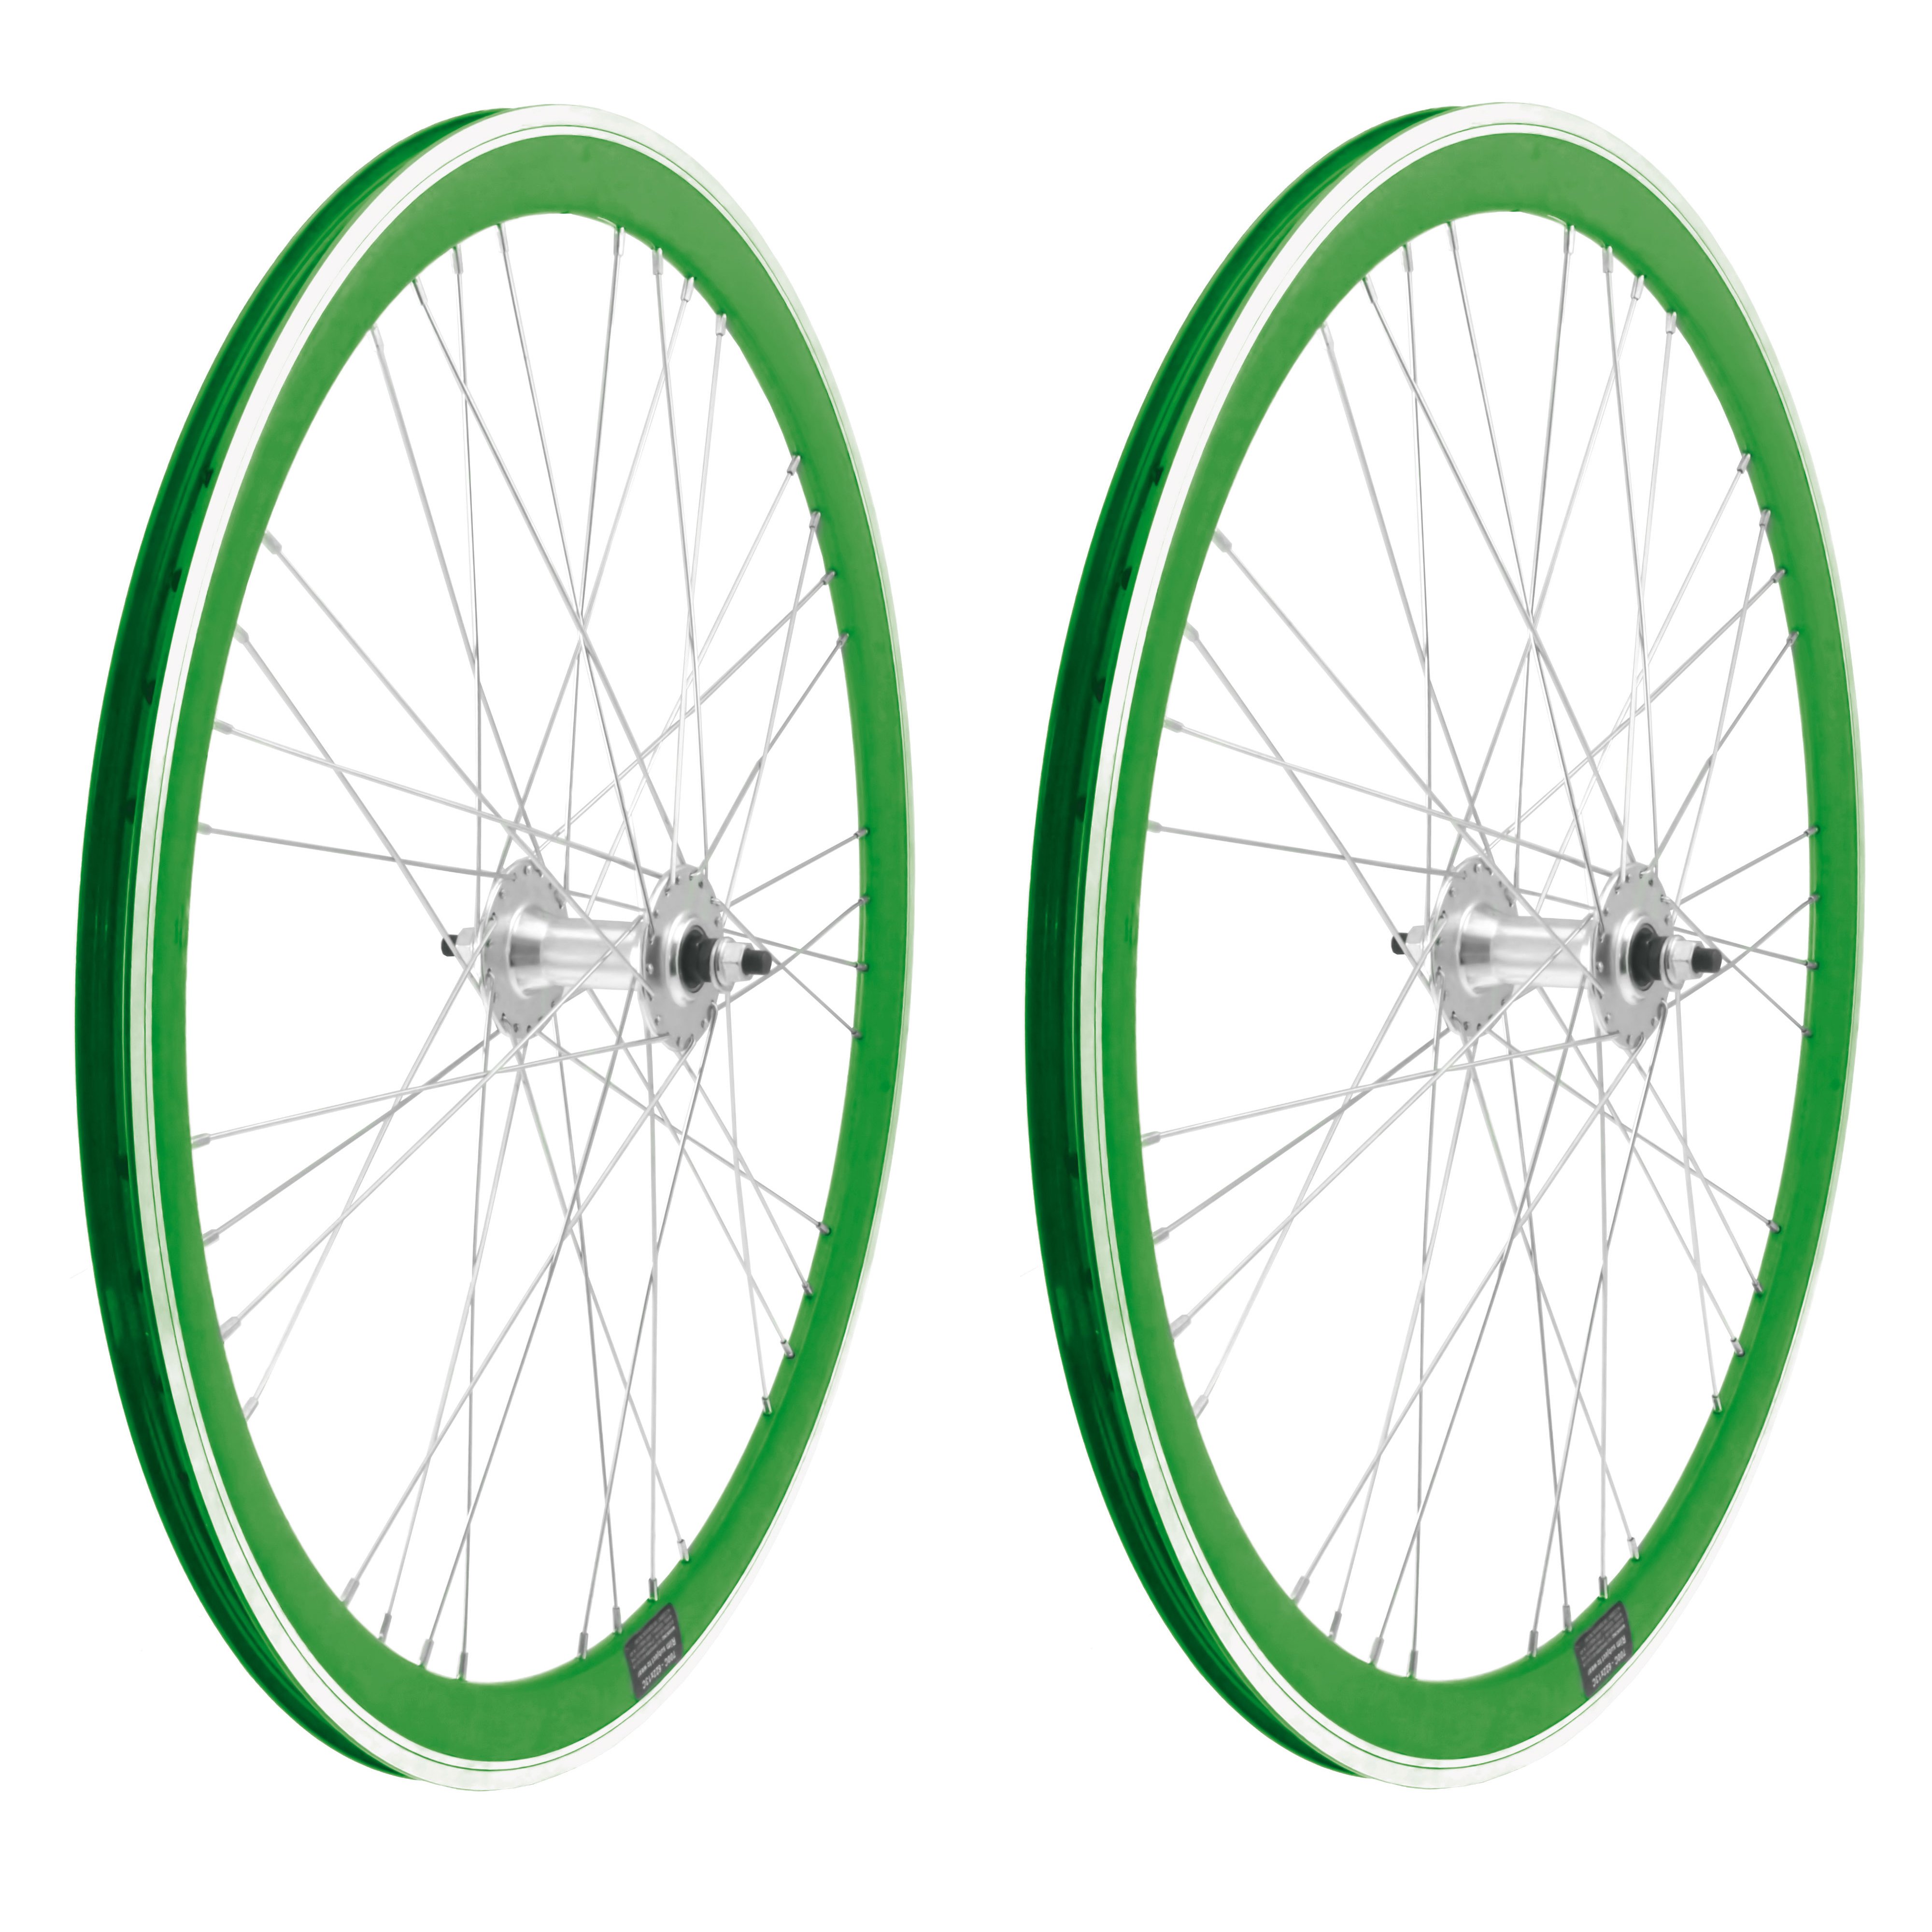 Ugyldigt med tiden tone Cykelhjul | Køb hjul og hjulsæt i høj kvalitet til alle typer cykler -  Cykelgear